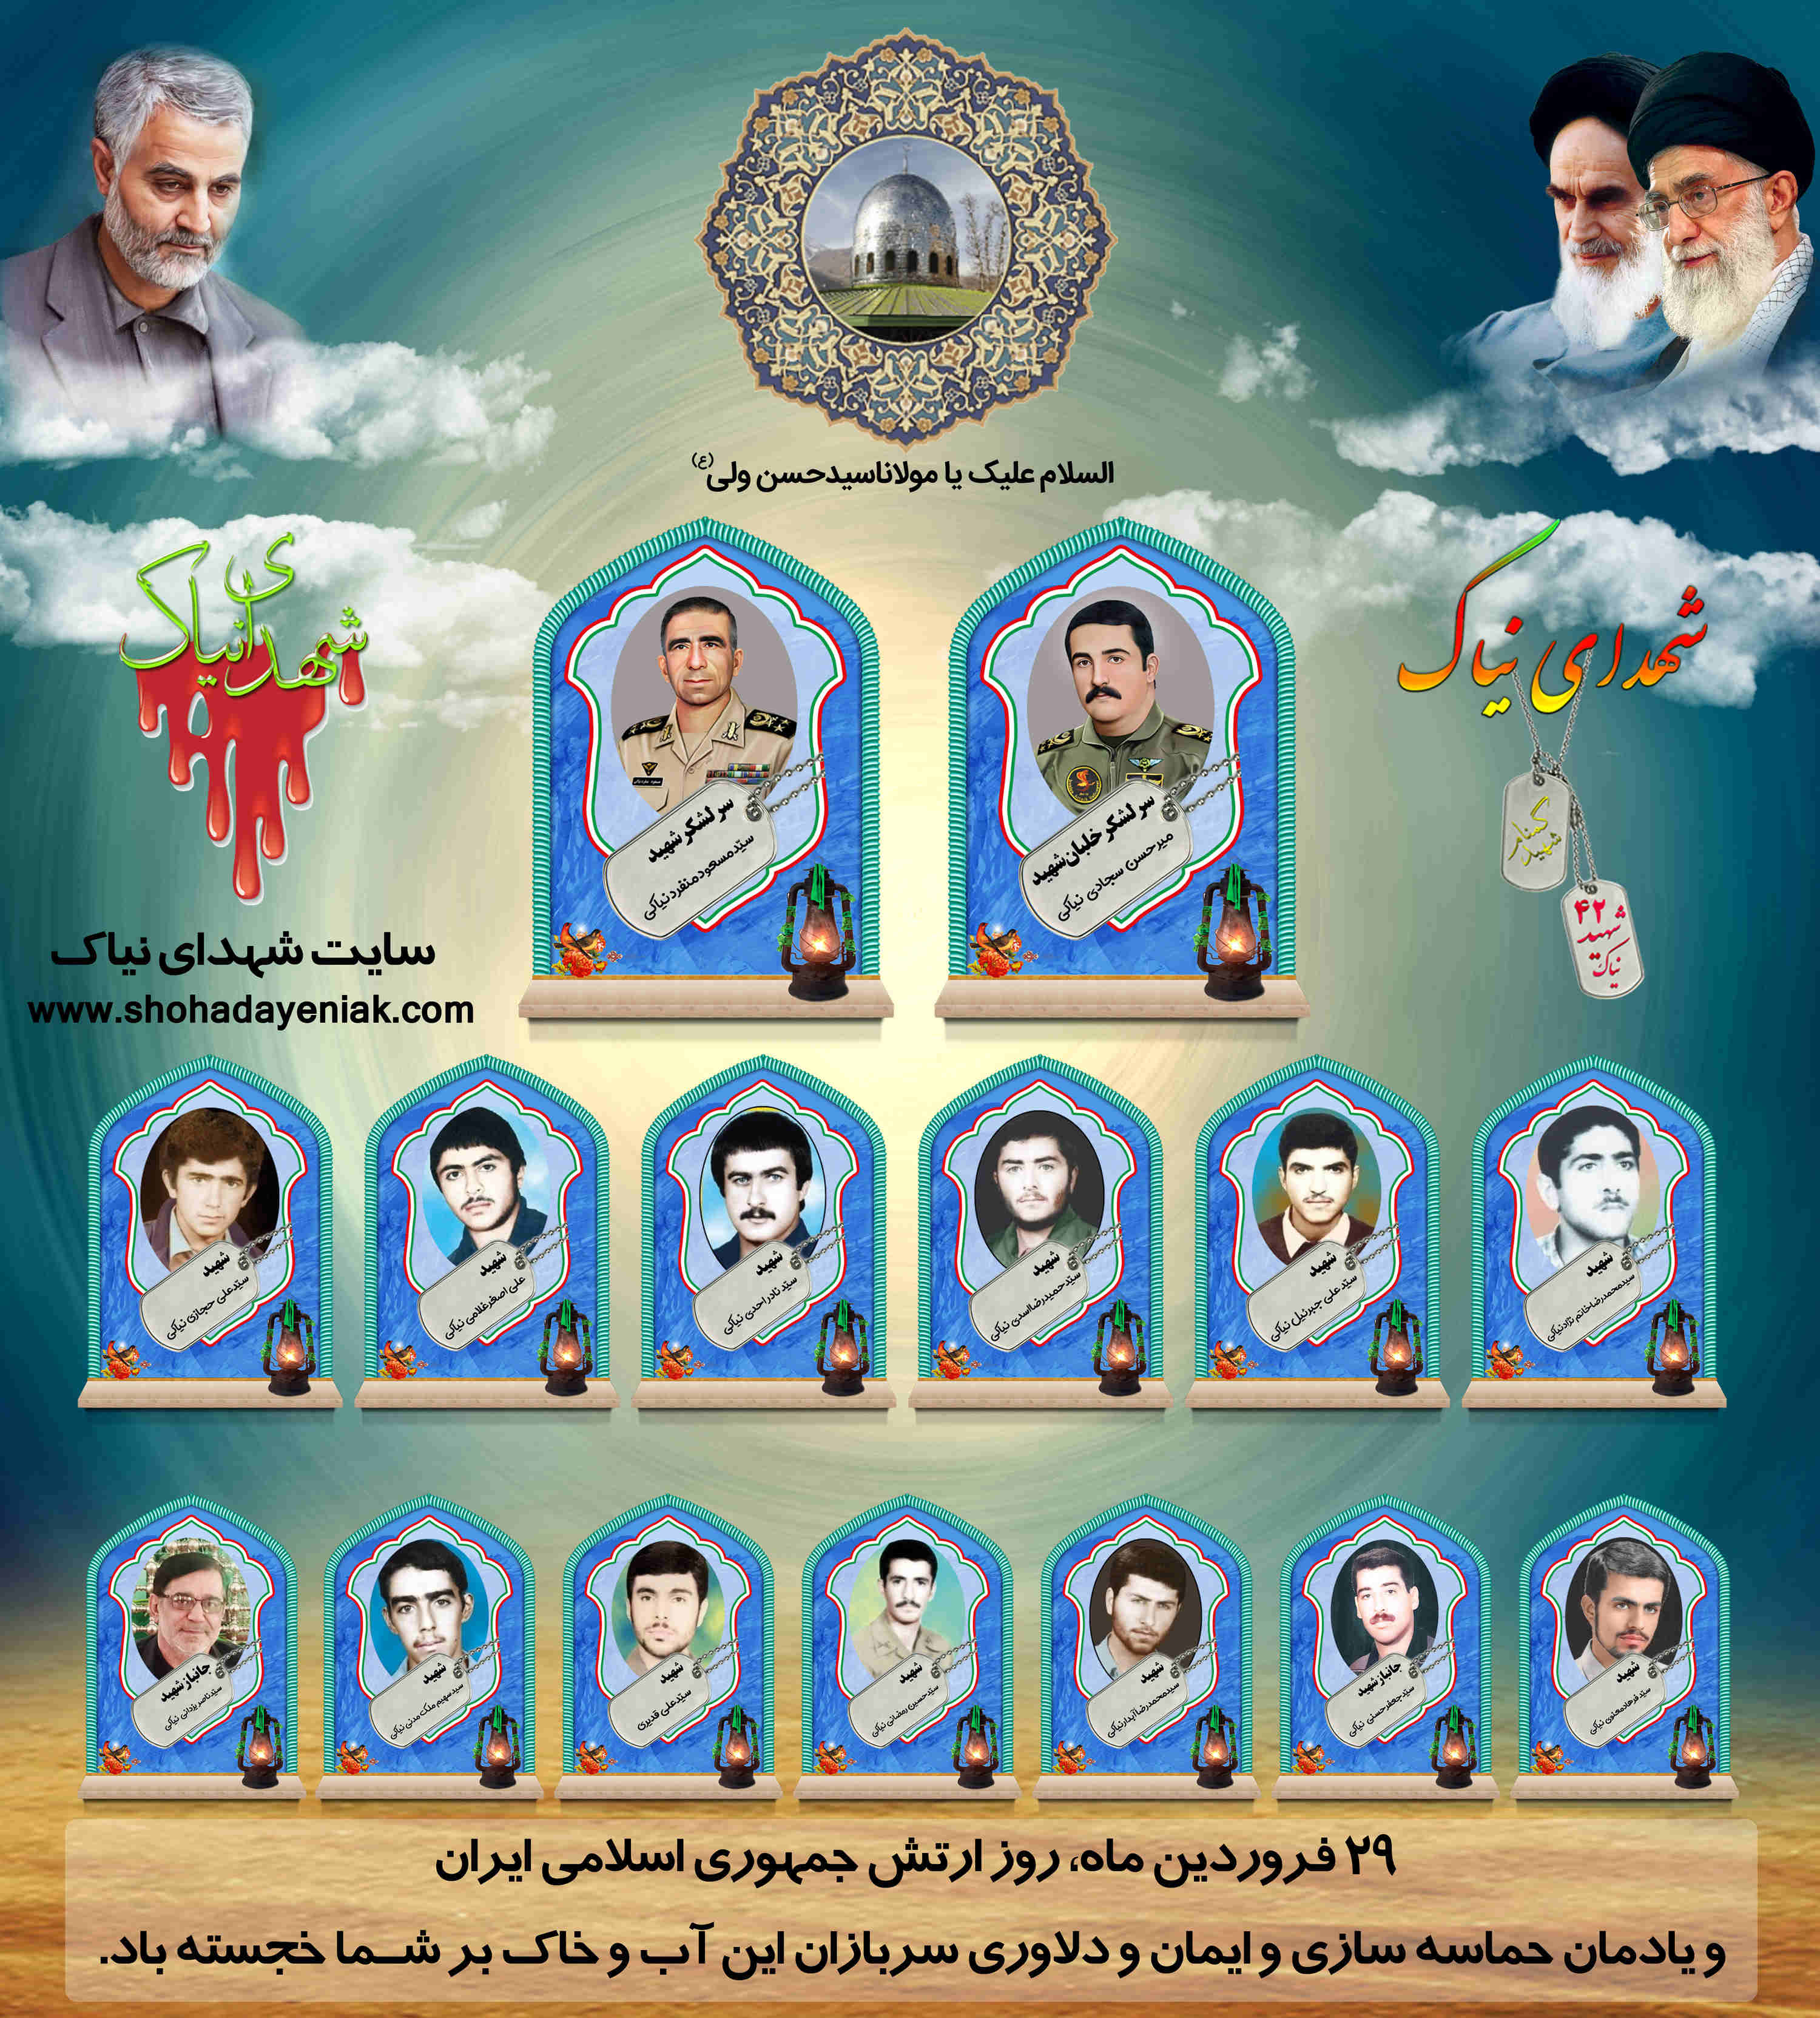 بیست ونهم فروردین روز یادمان حماسه سازی وایمان ودلاوری سربازان ارتش جمهوری اسلامی ایران مبارک